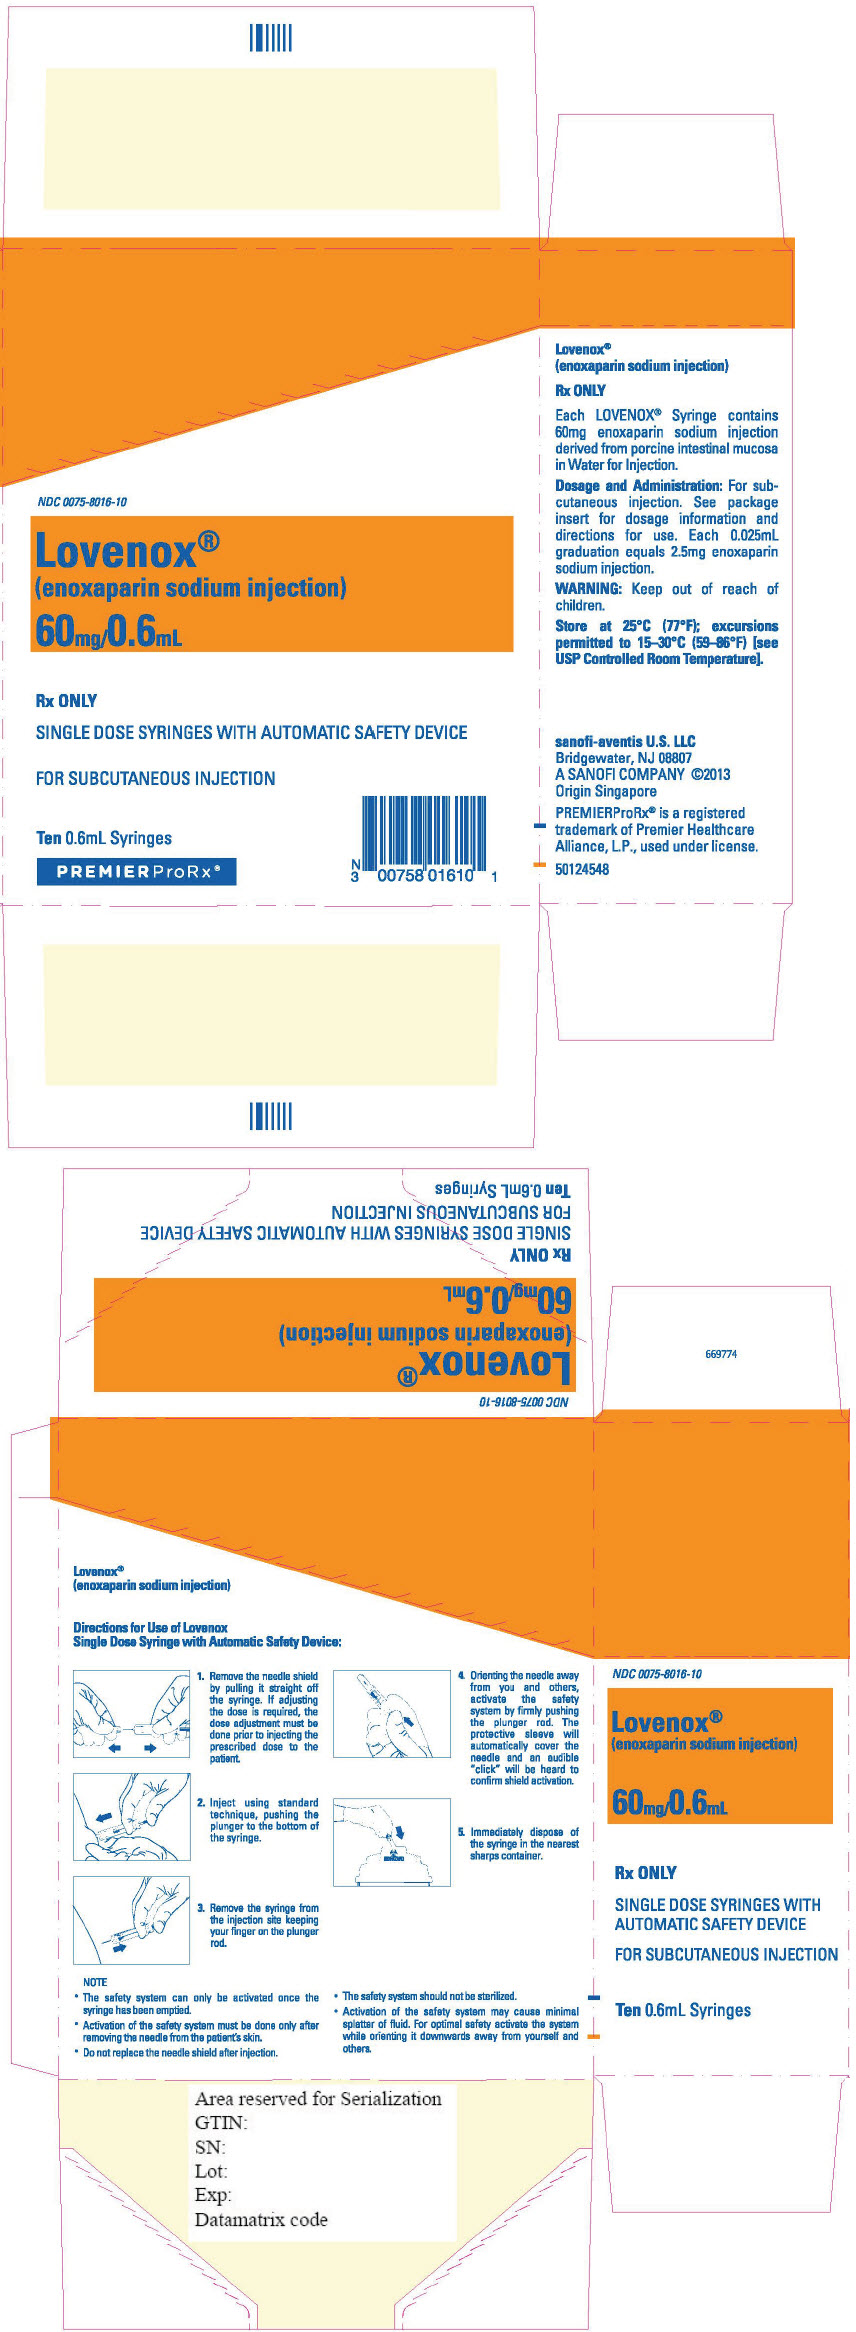 Principal Display Panel - 60 mg/0.6 mL Syringe Blister Pack Carton